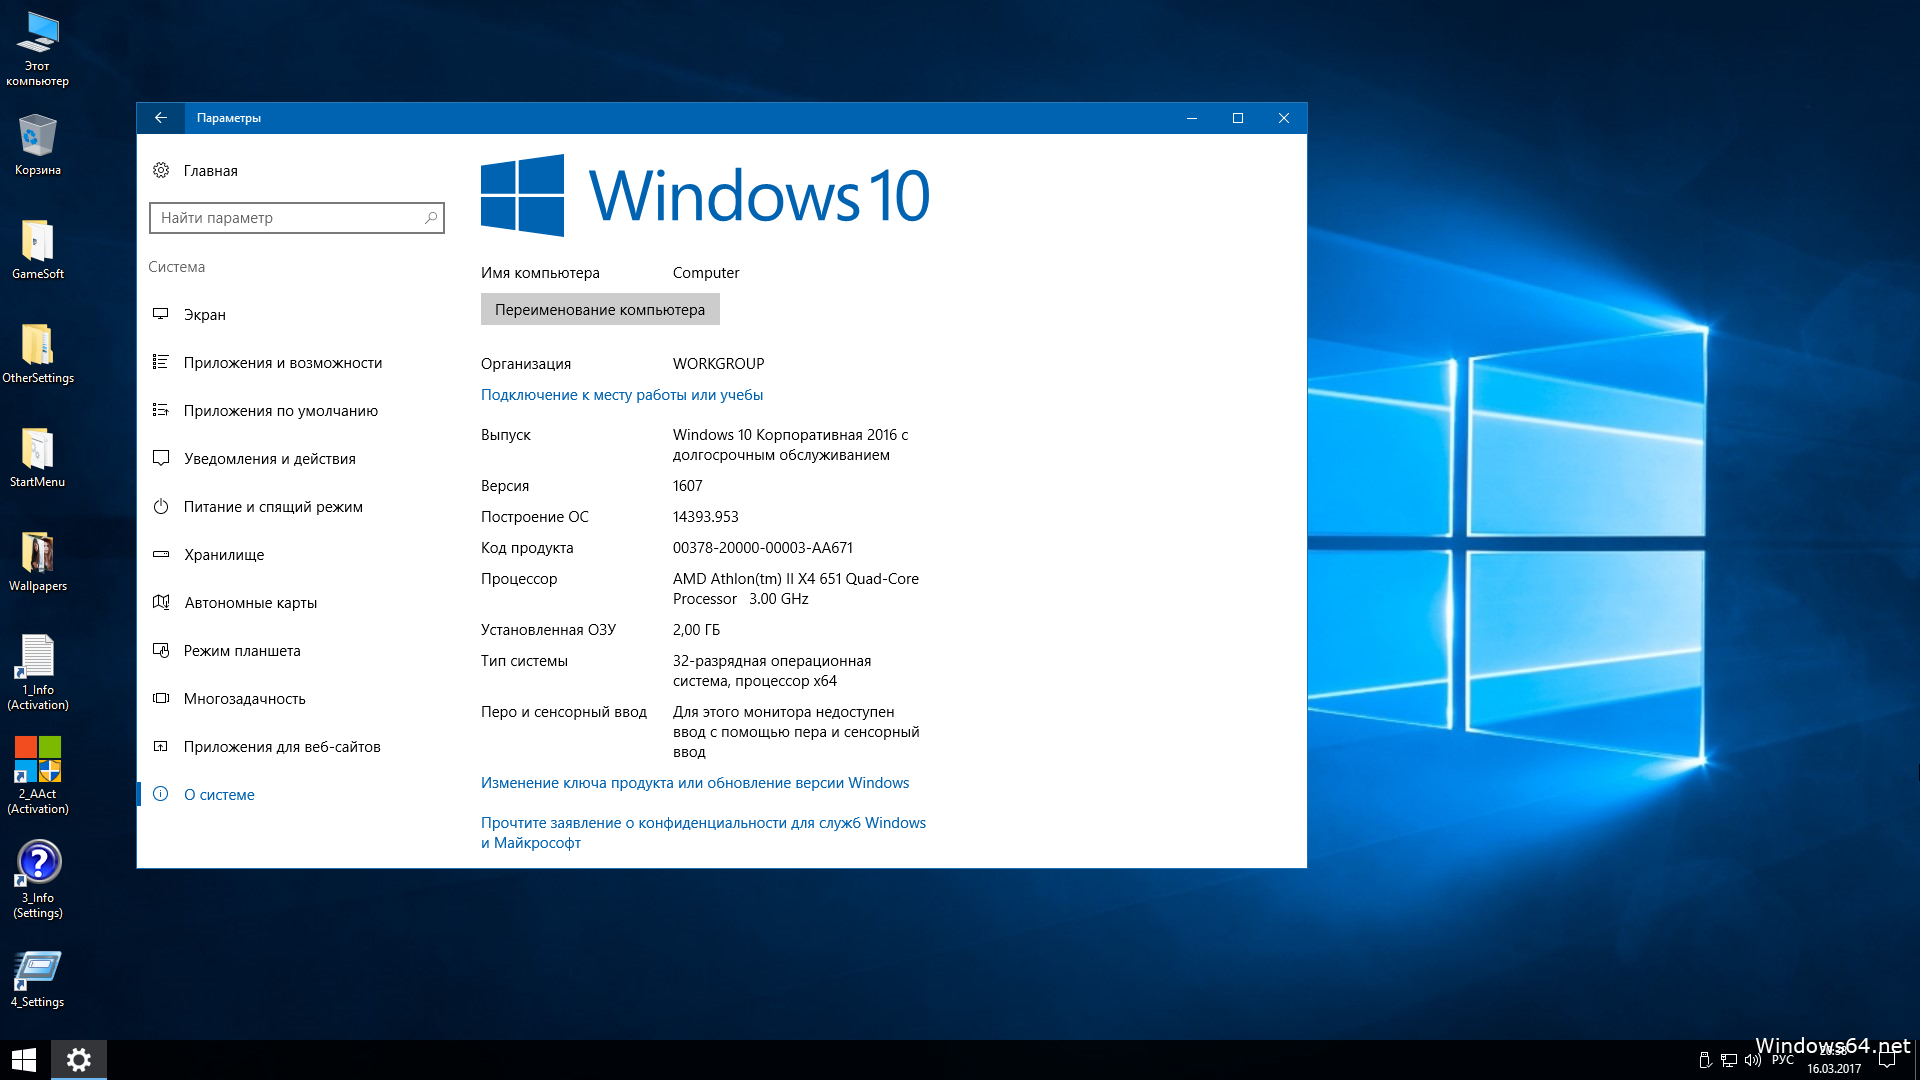 Виндовс 10 информация. Windows 10 Enterprise Box. Windows 10 Enterprise (корпоративная). Система виндовс 10 про 64 бит. Windows 10 Enterprise 2016 LTSB.